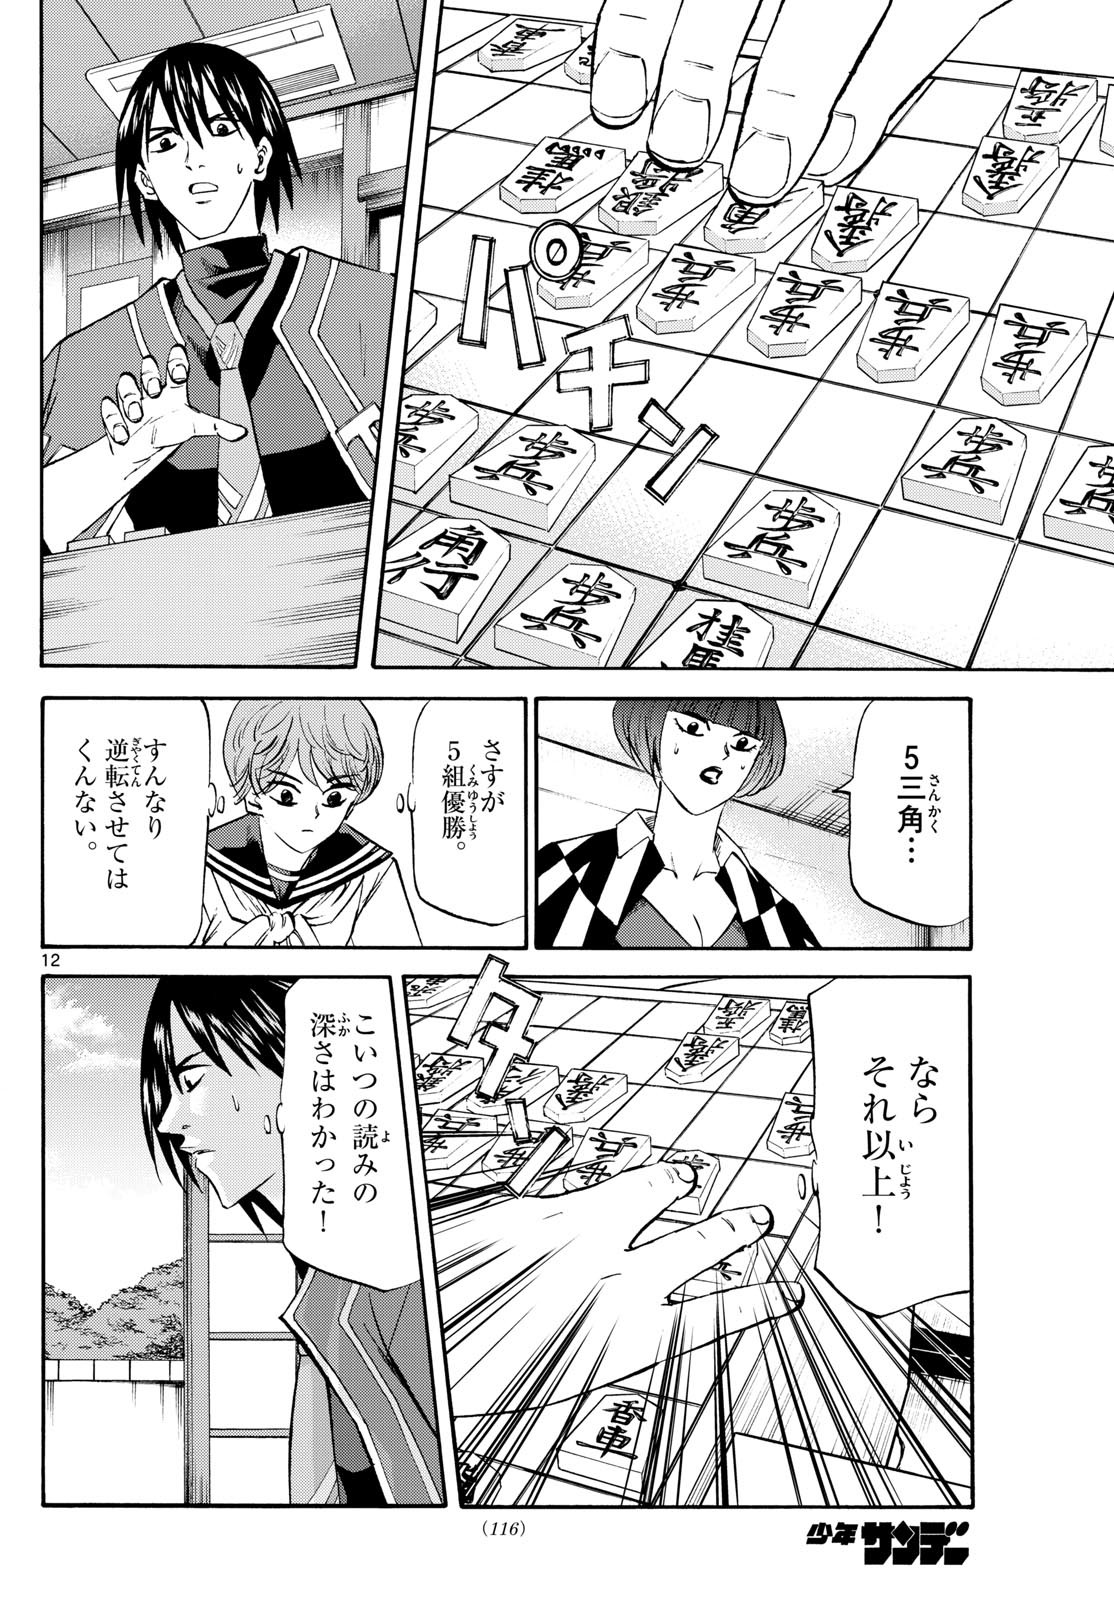 Ryu-to-Ichigo - Chapter 198 - Page 12